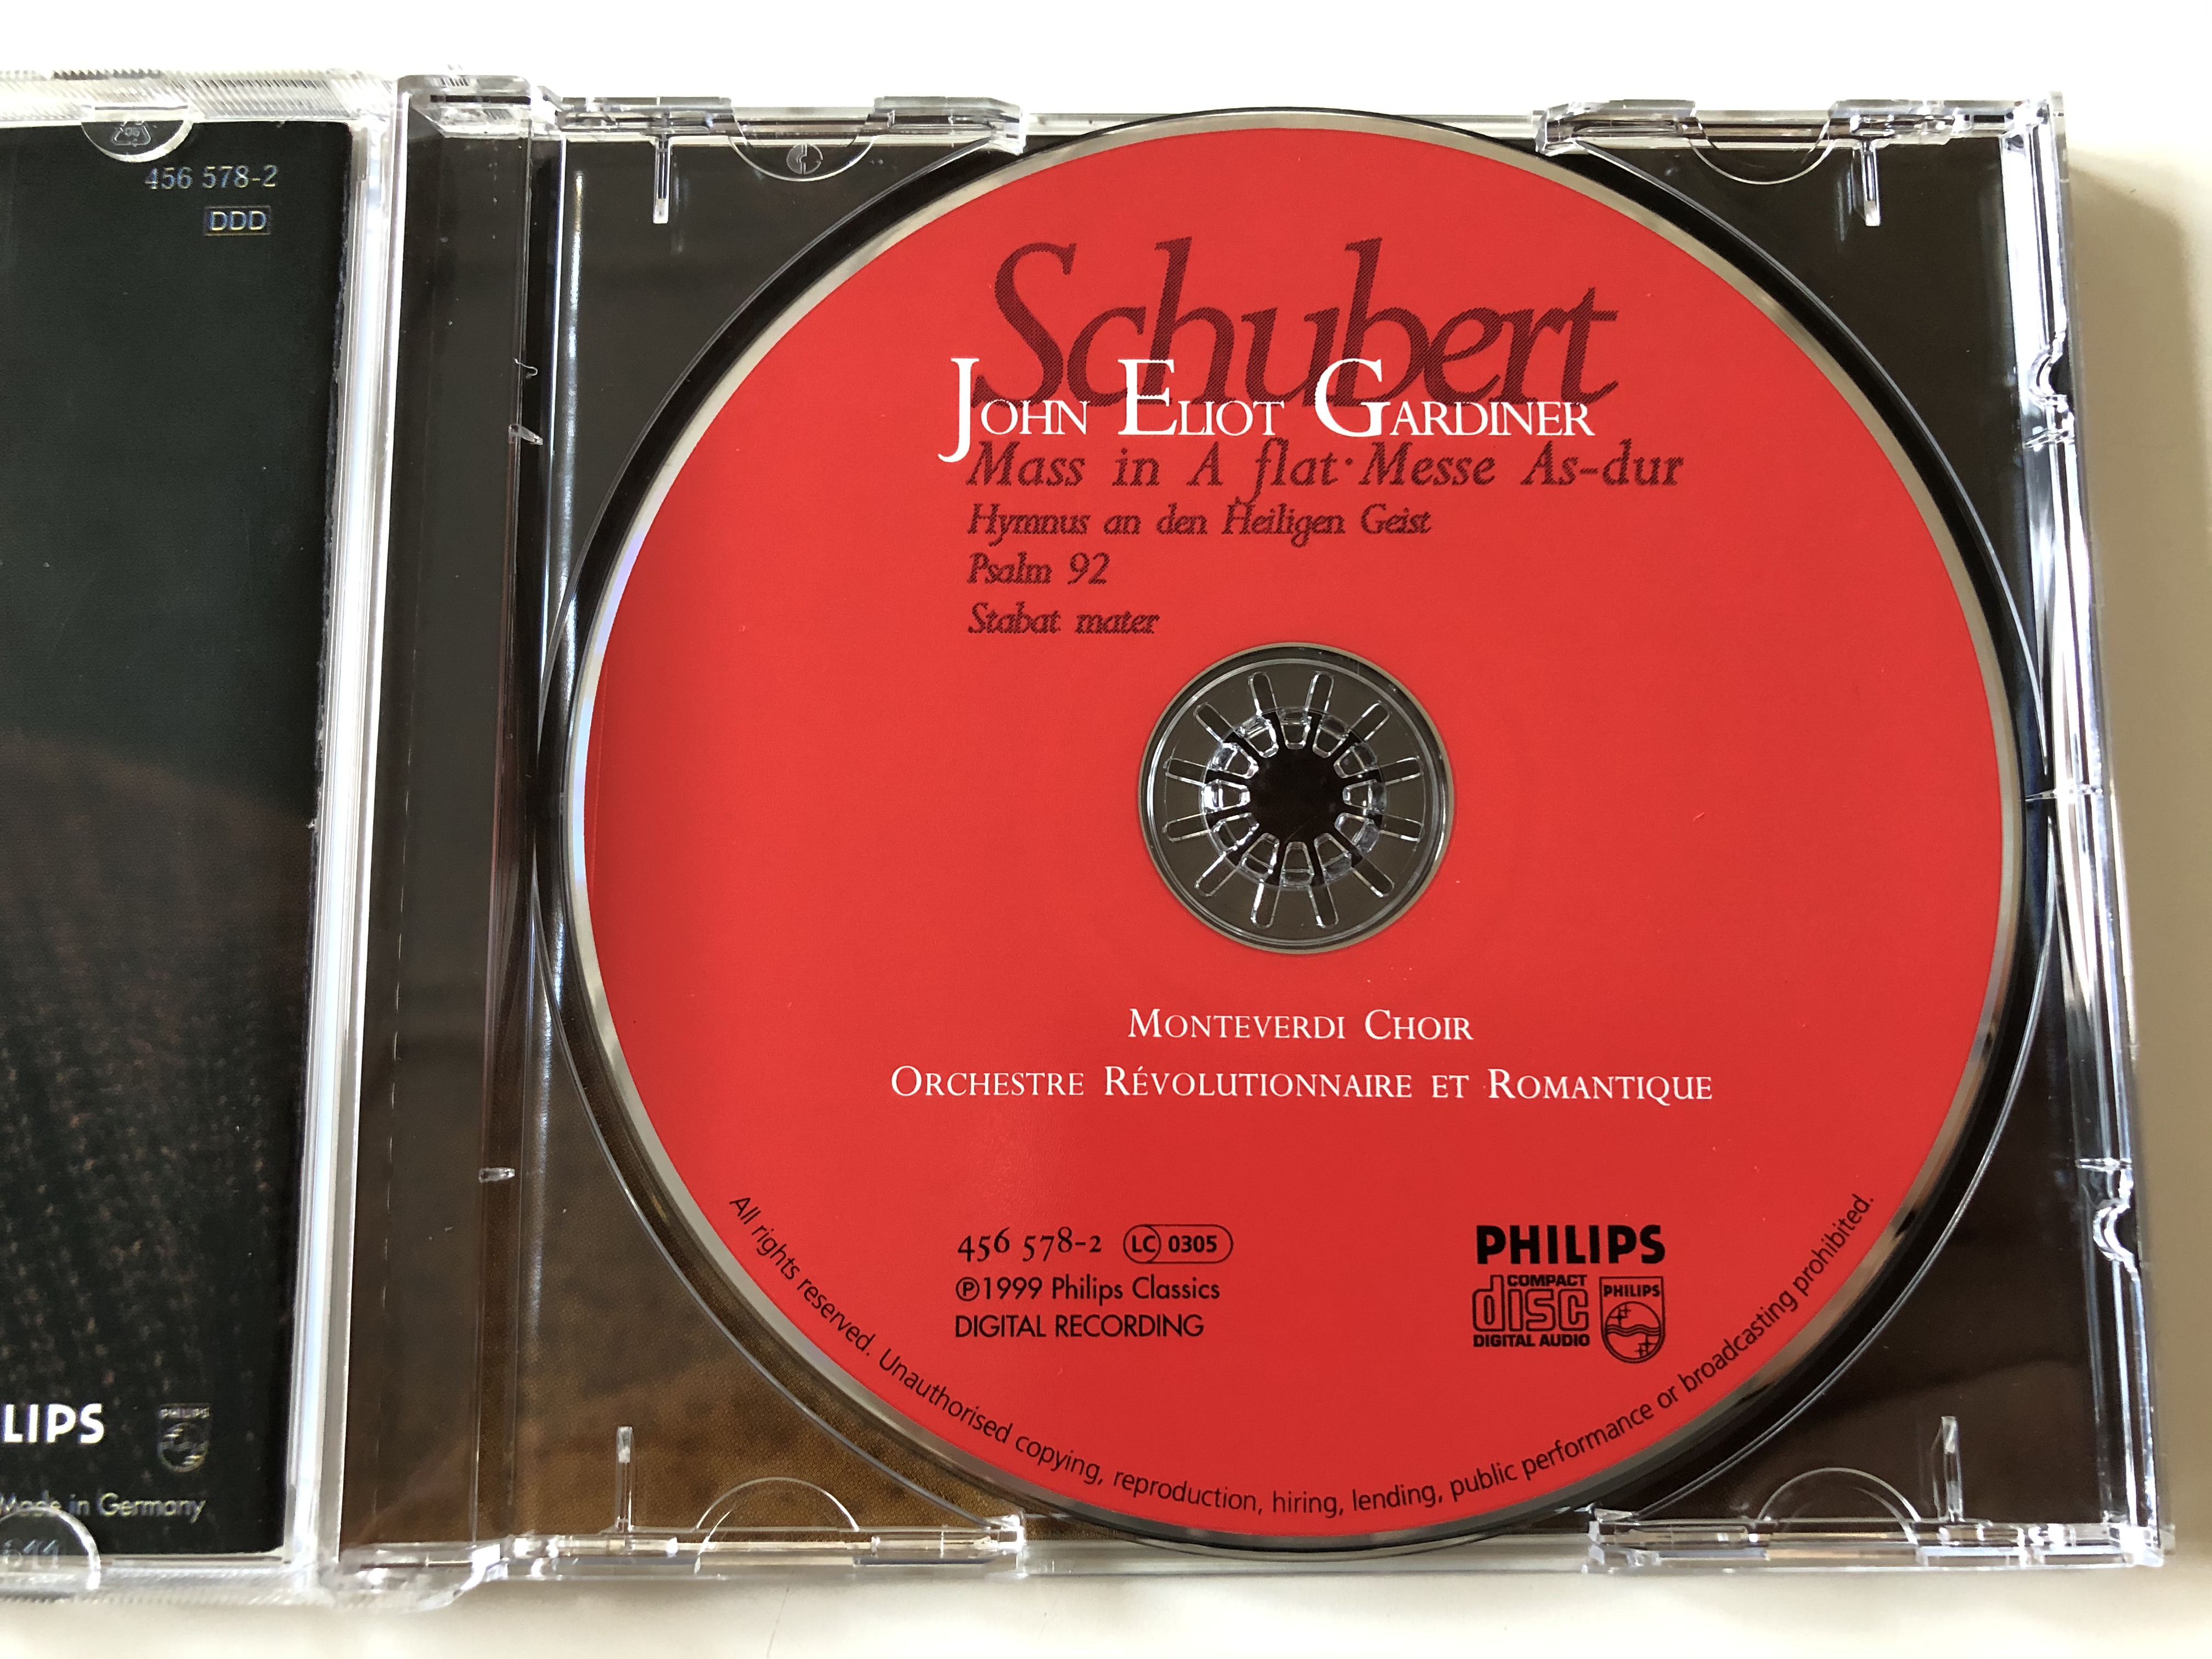 schubert-mass-in-a-flat-messe-as-dur-john-eliot-gardiner-monteverdi-choir-orchestre-revolutionnaire-et-romantique-philips-audio-cd-1999-456-578-2-10-.jpg